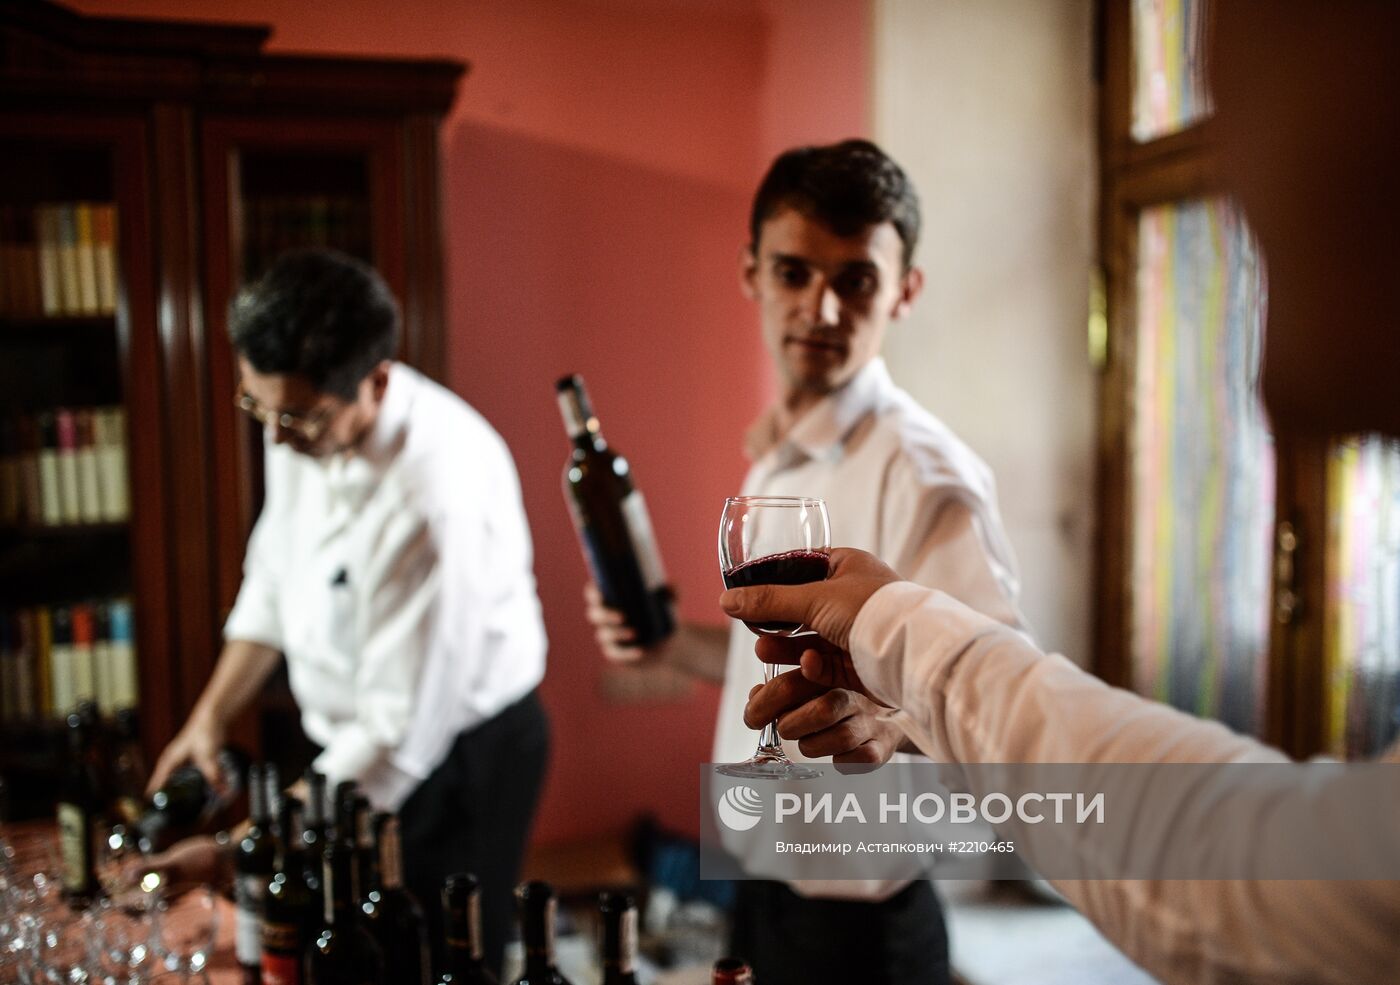 Пресс-конференция "Грузинские вина возвращаются в Россию"